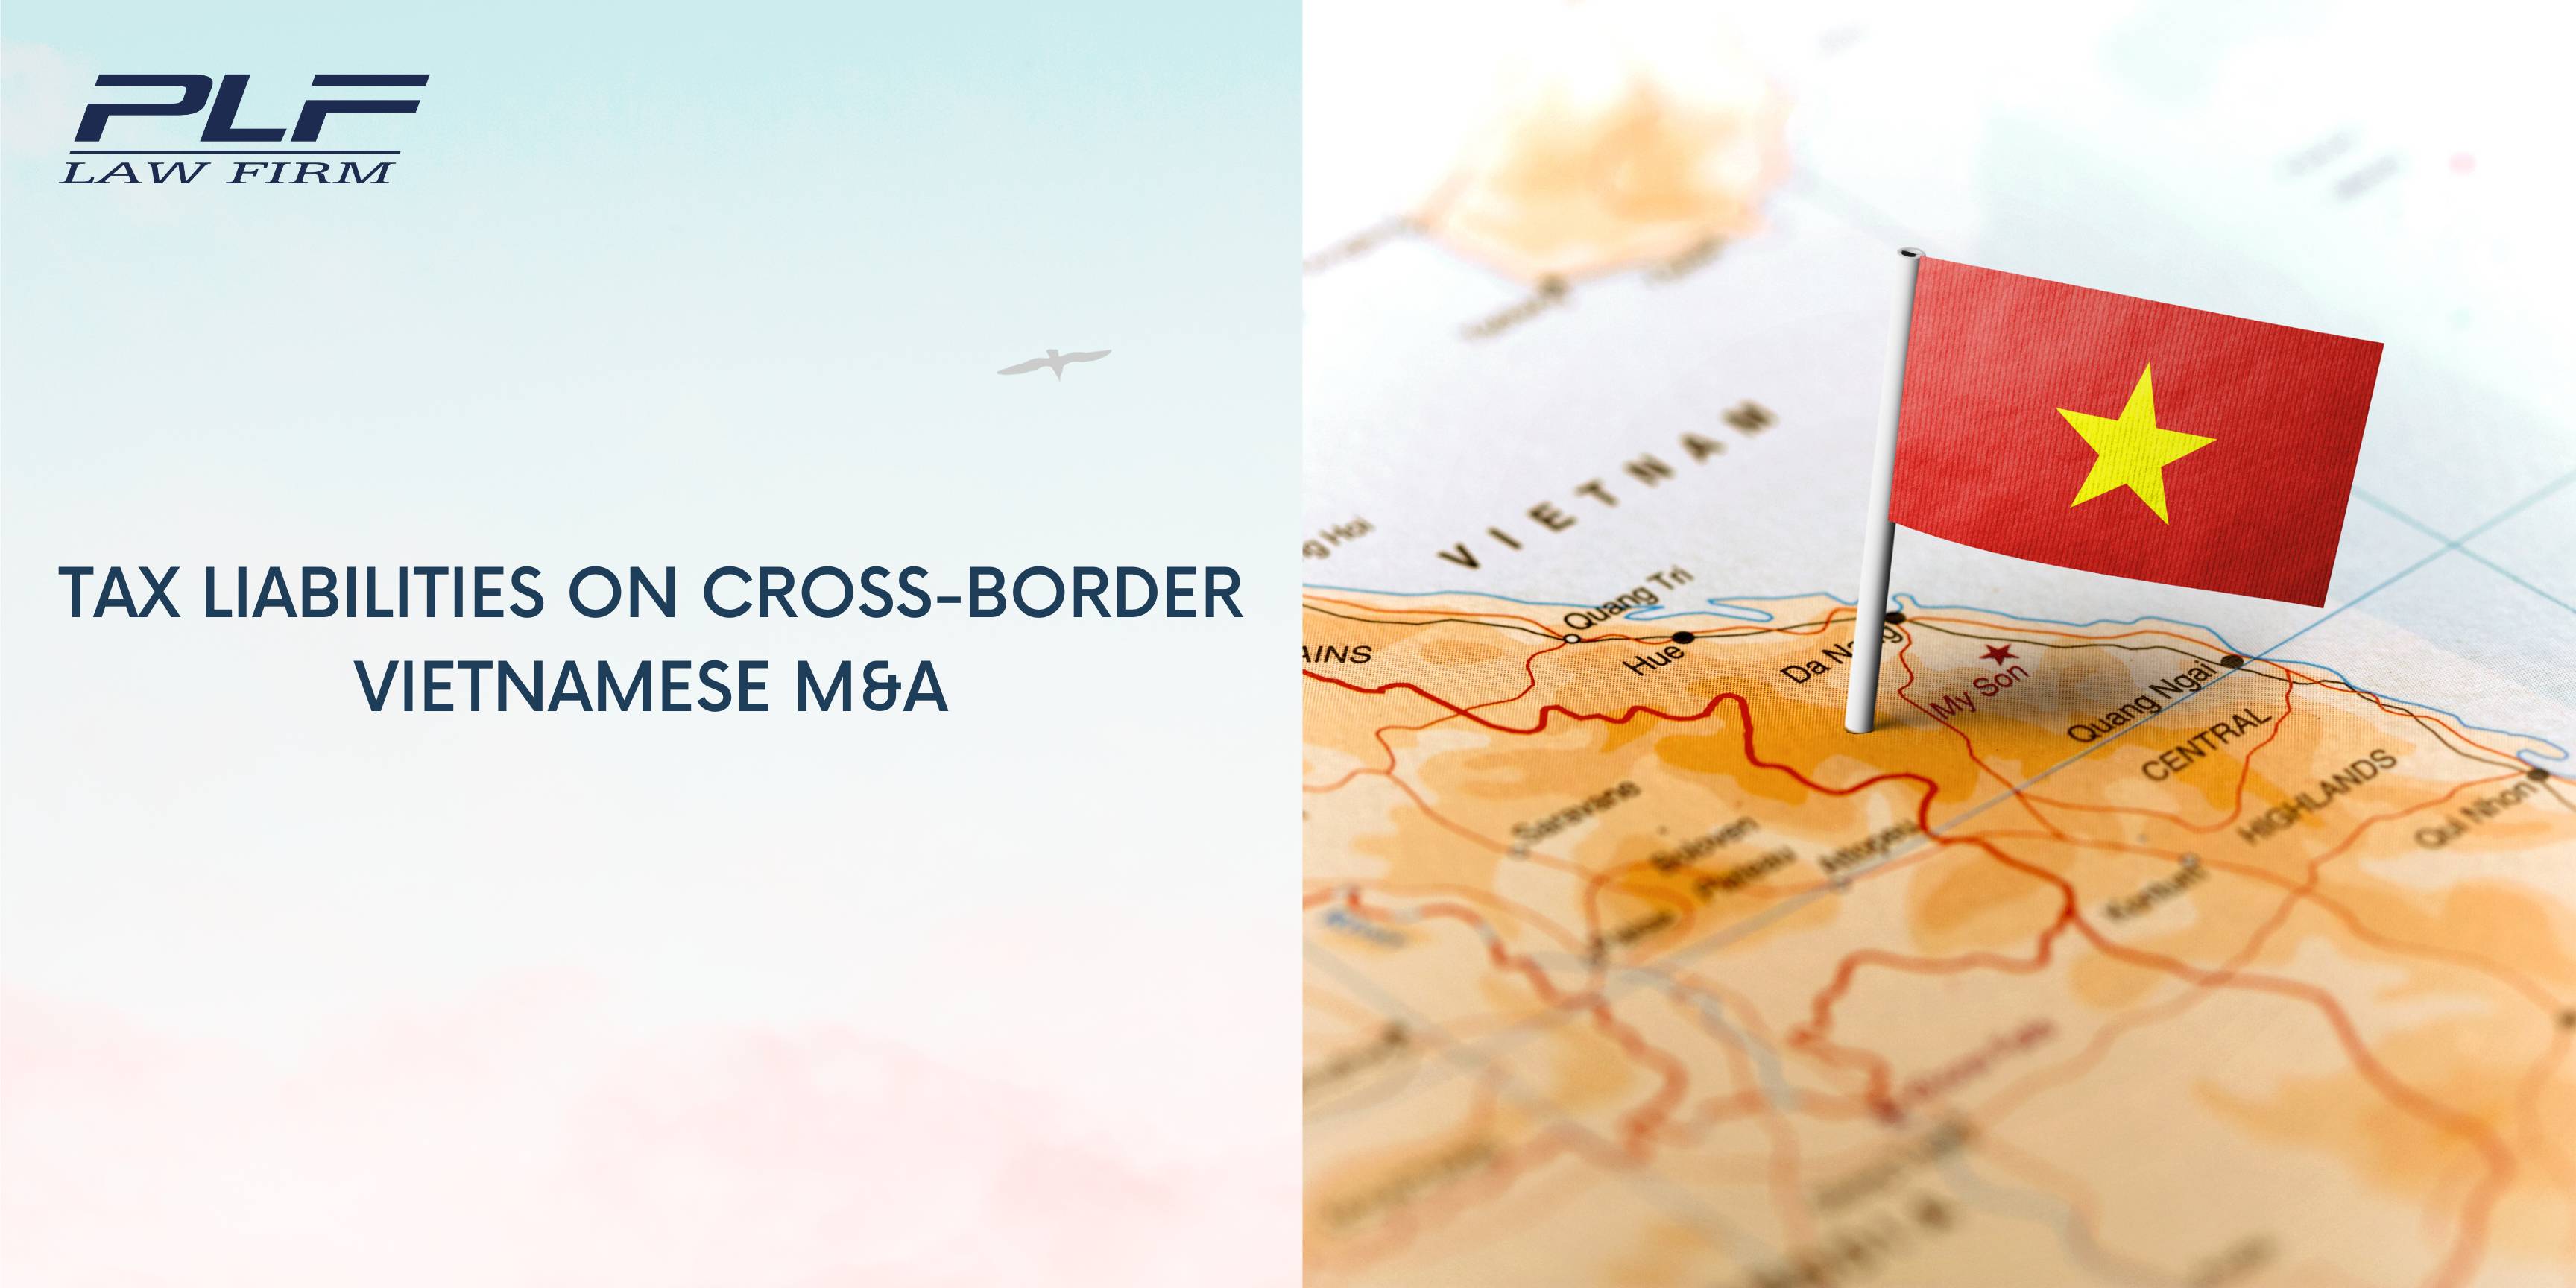 Plf Tax Liabilities On Cross Border Vietnamese Ma